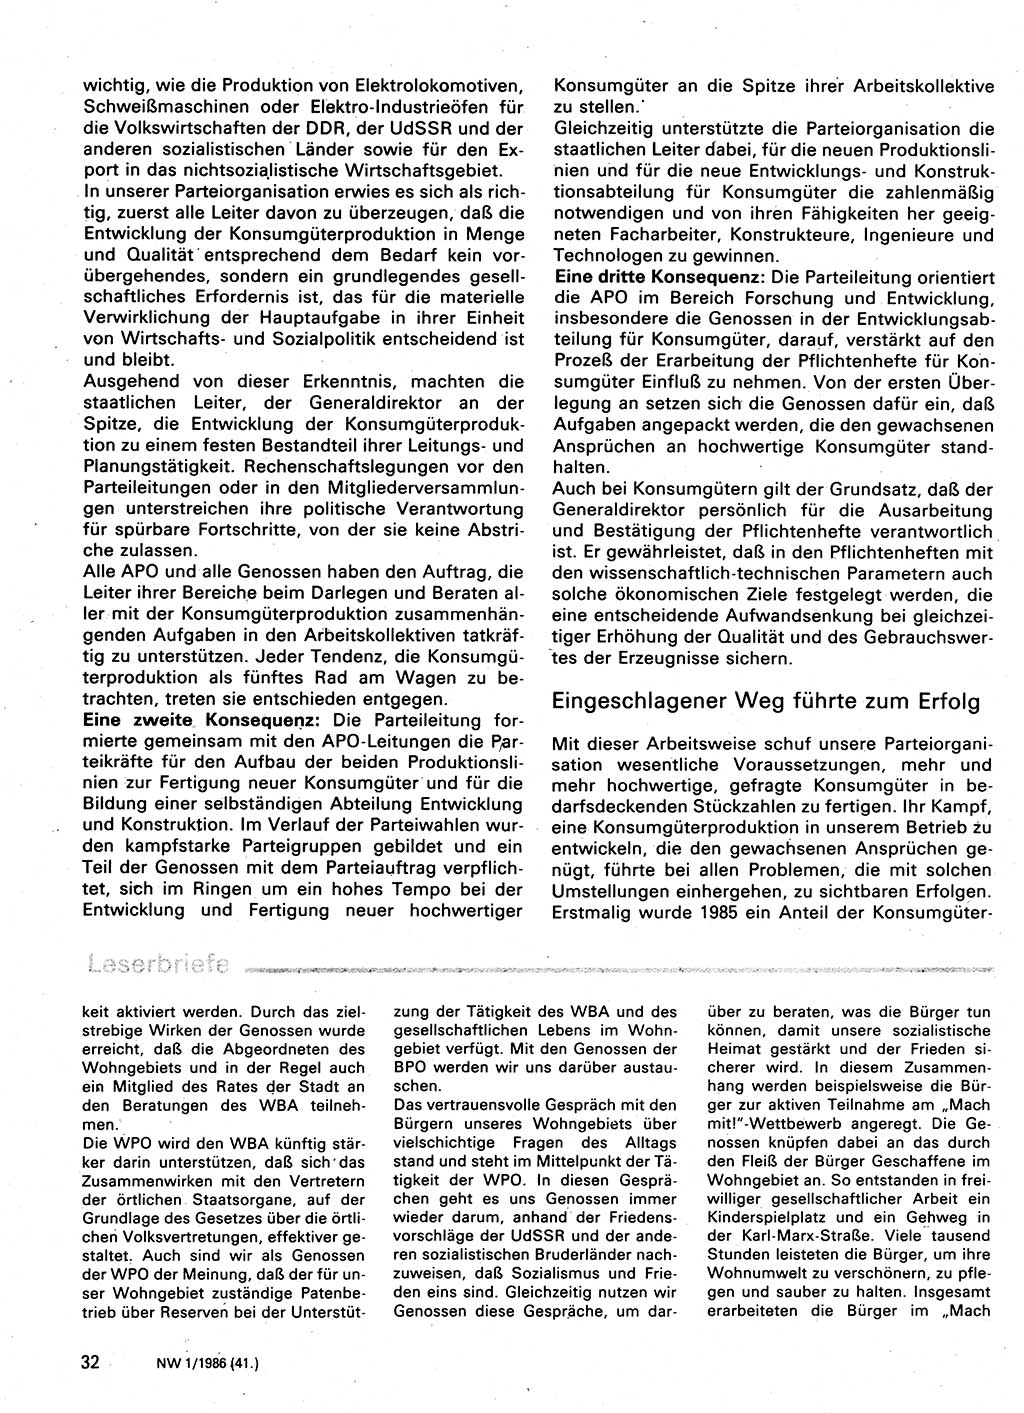 Neuer Weg (NW), Organ des Zentralkomitees (ZK) der SED (Sozialistische Einheitspartei Deutschlands) für Fragen des Parteilebens, 41. Jahrgang [Deutsche Demokratische Republik (DDR)] 1986, Seite 32 (NW ZK SED DDR 1986, S. 32)